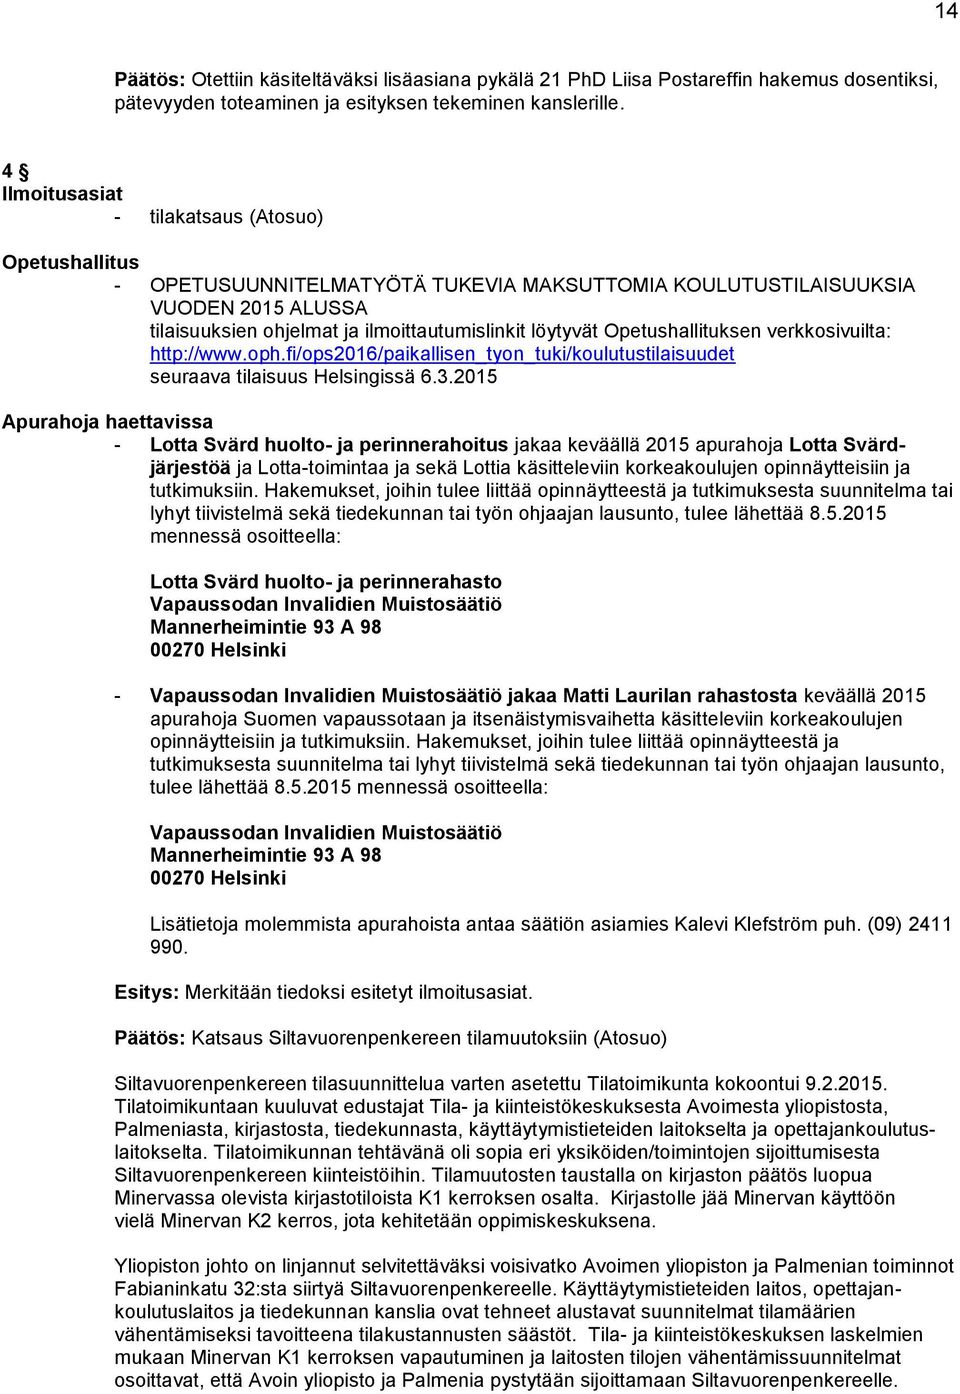 Opetushallituksen verkkosivuilta: http://www.oph.fi/ops2016/paikallisen_tyon_tuki/koulutustilaisuudet seuraava tilaisuus Helsingissä 6.3.